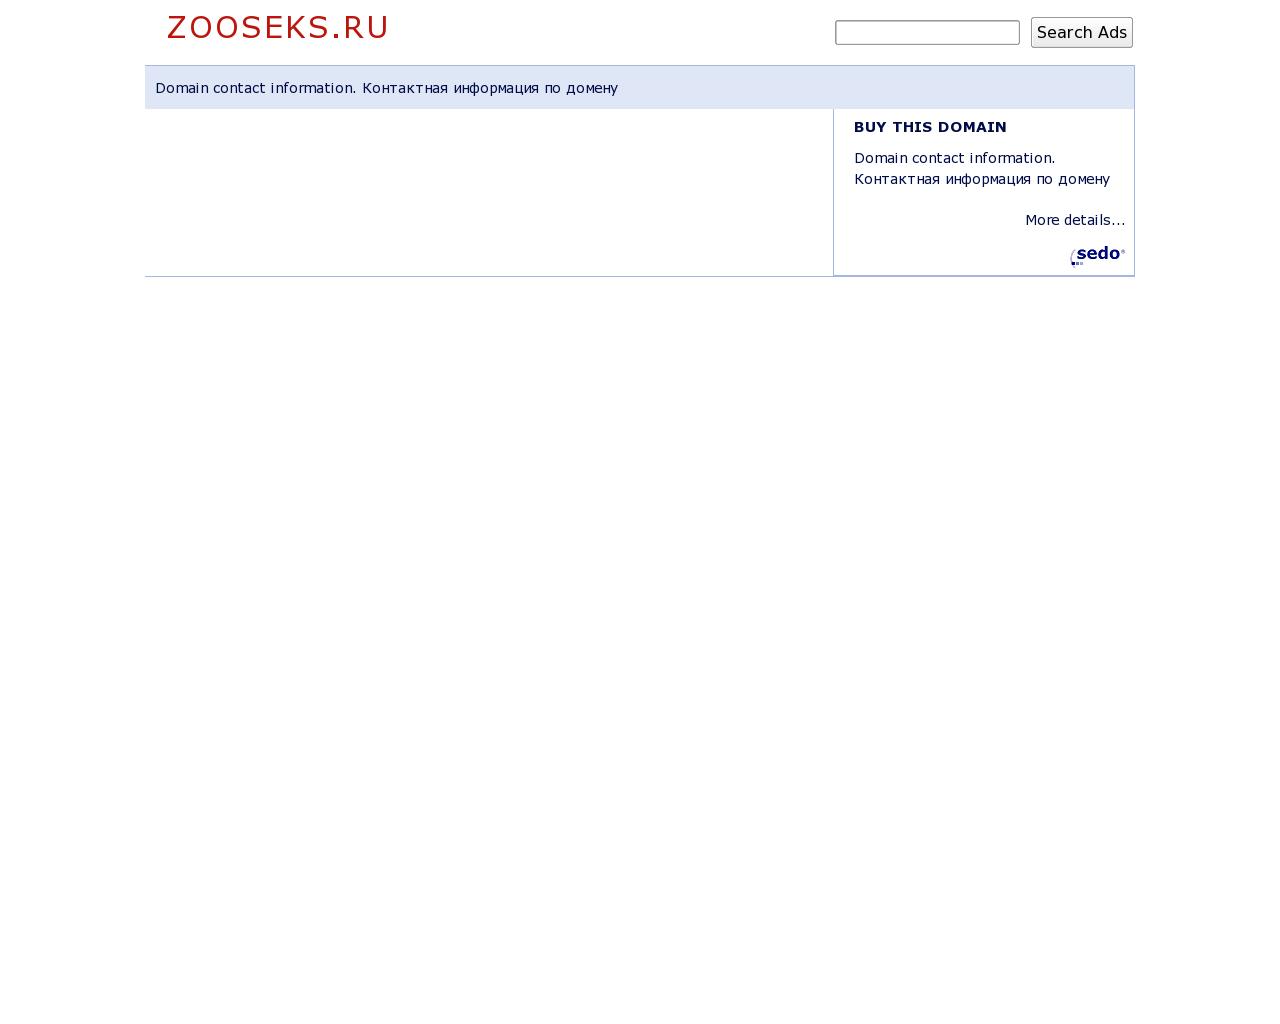 Изображение сайта zooseks.ru в разрешении 1280x1024